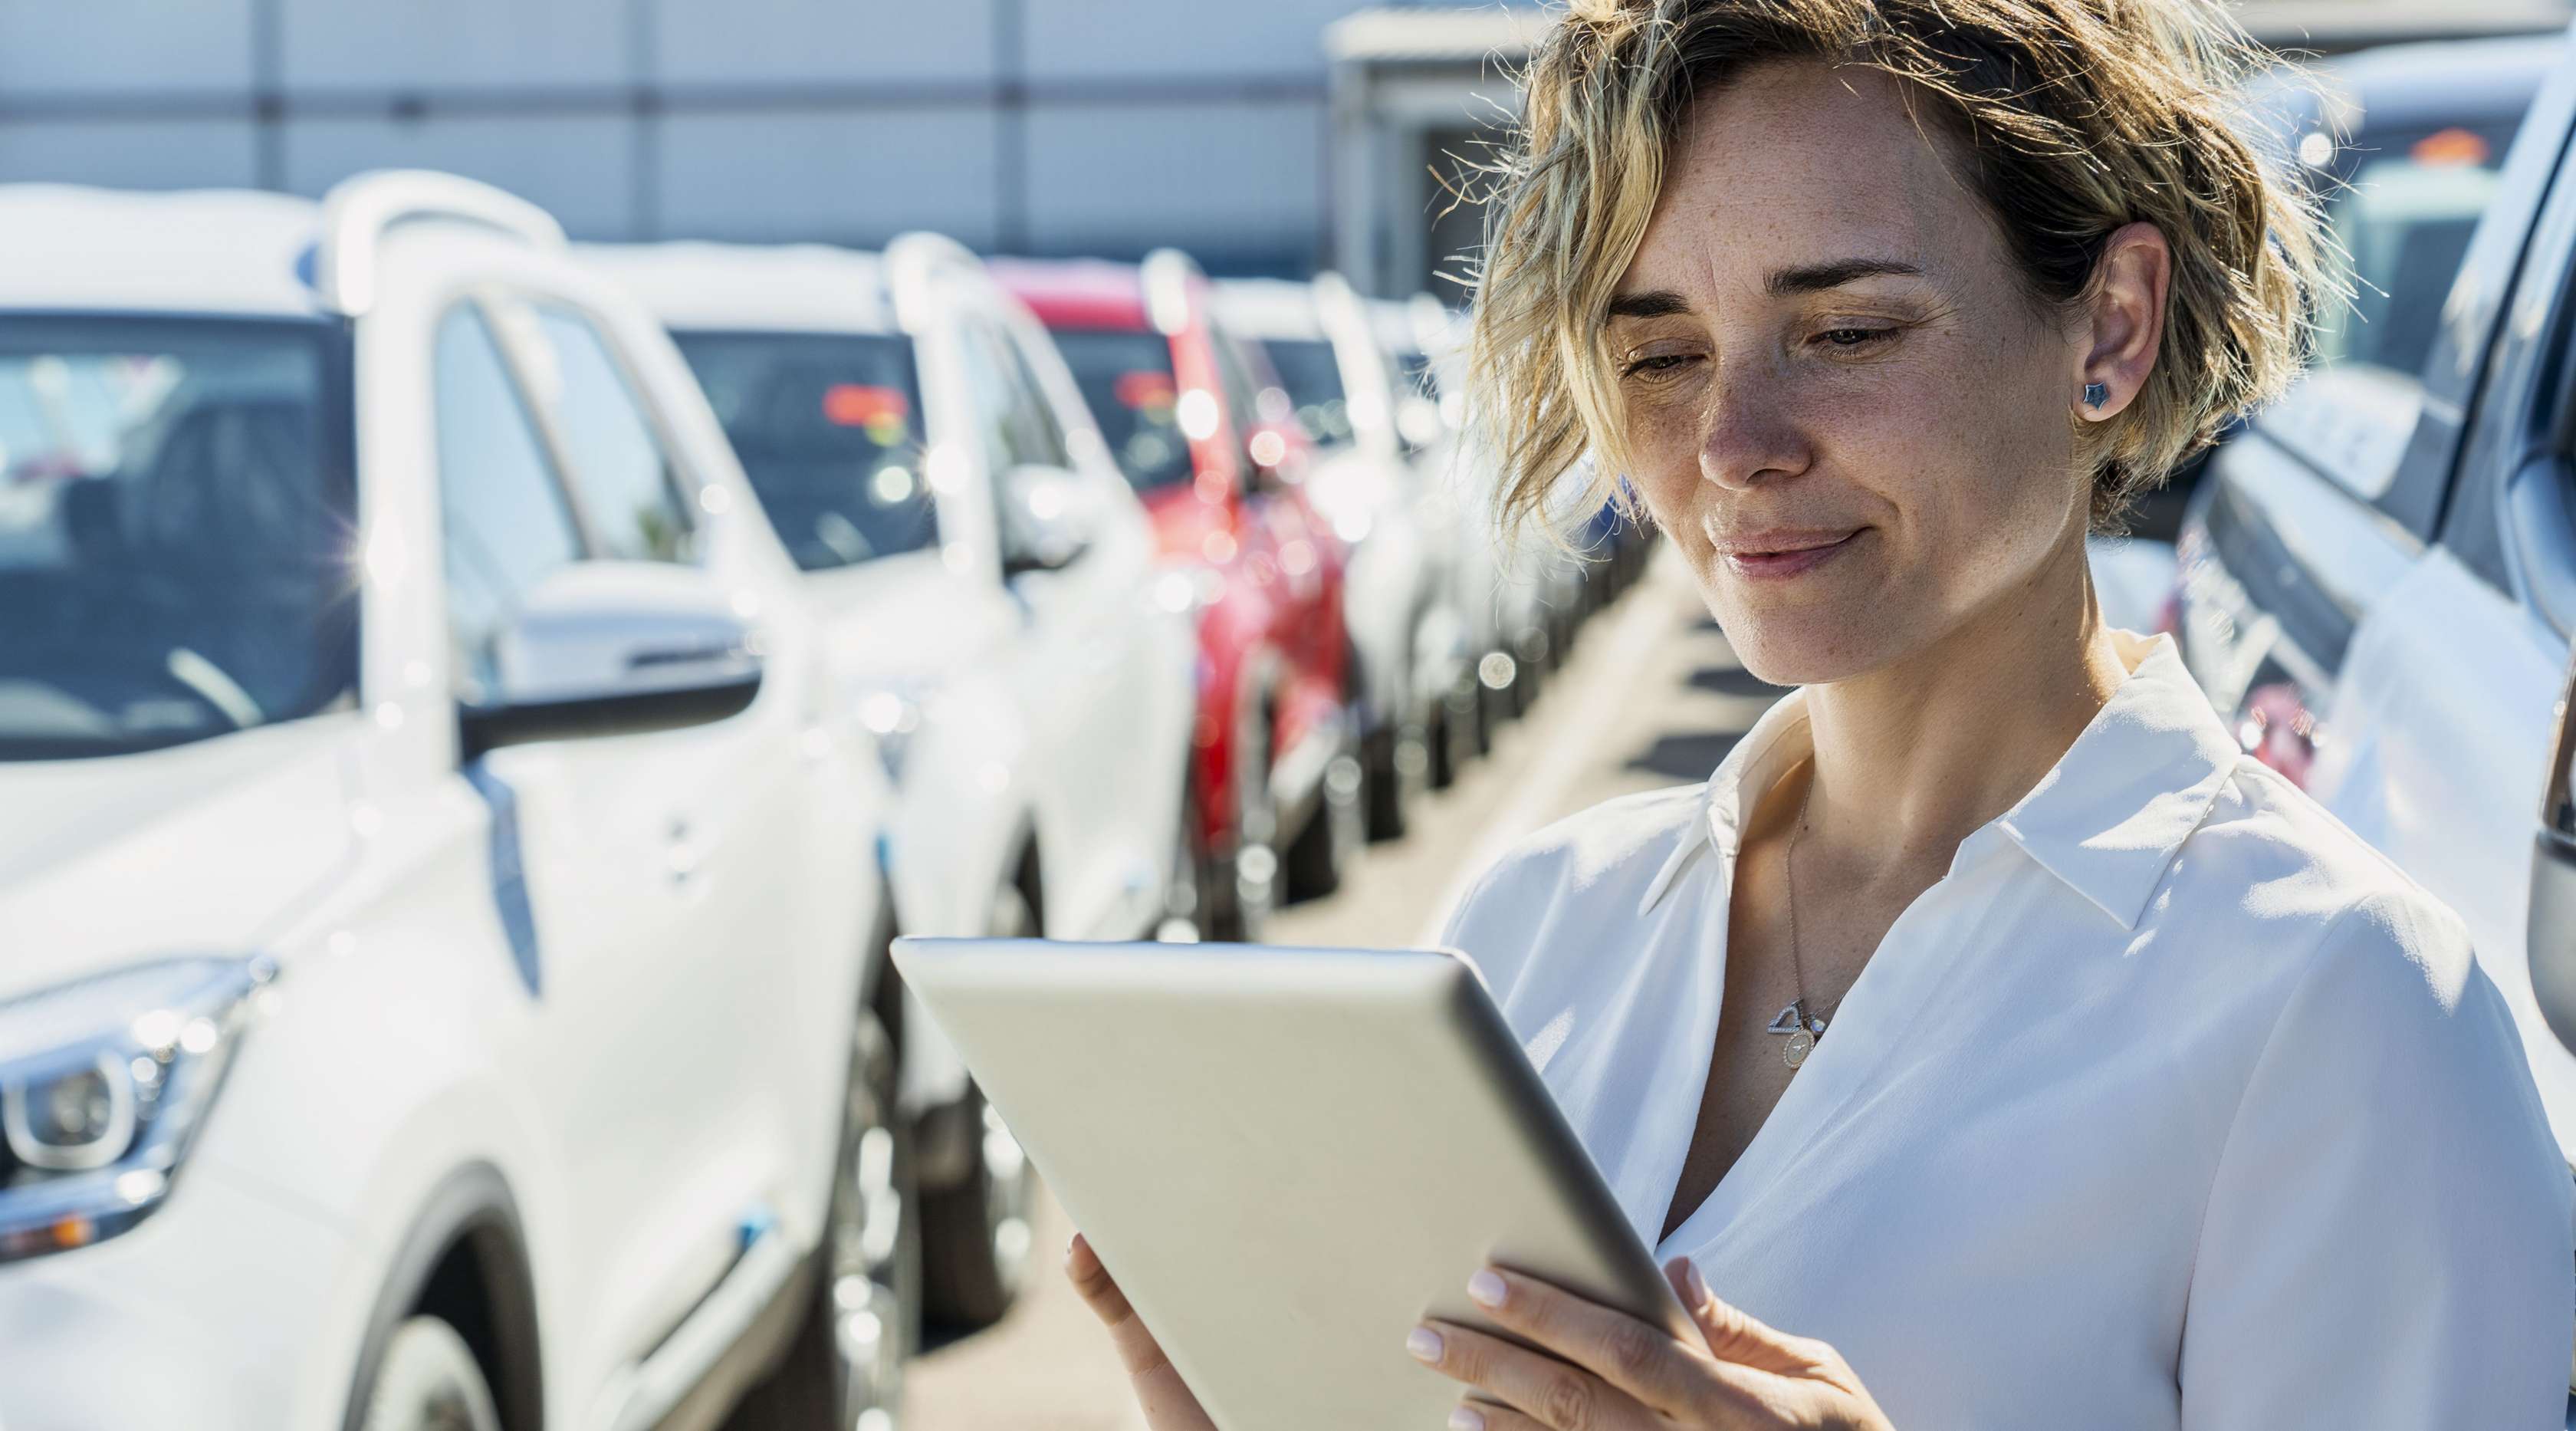 Allianz - Flottenversicherung: Eine Geschäftsfrau steht mit einem Ipad zwischen mehreren Geschäftswagen.